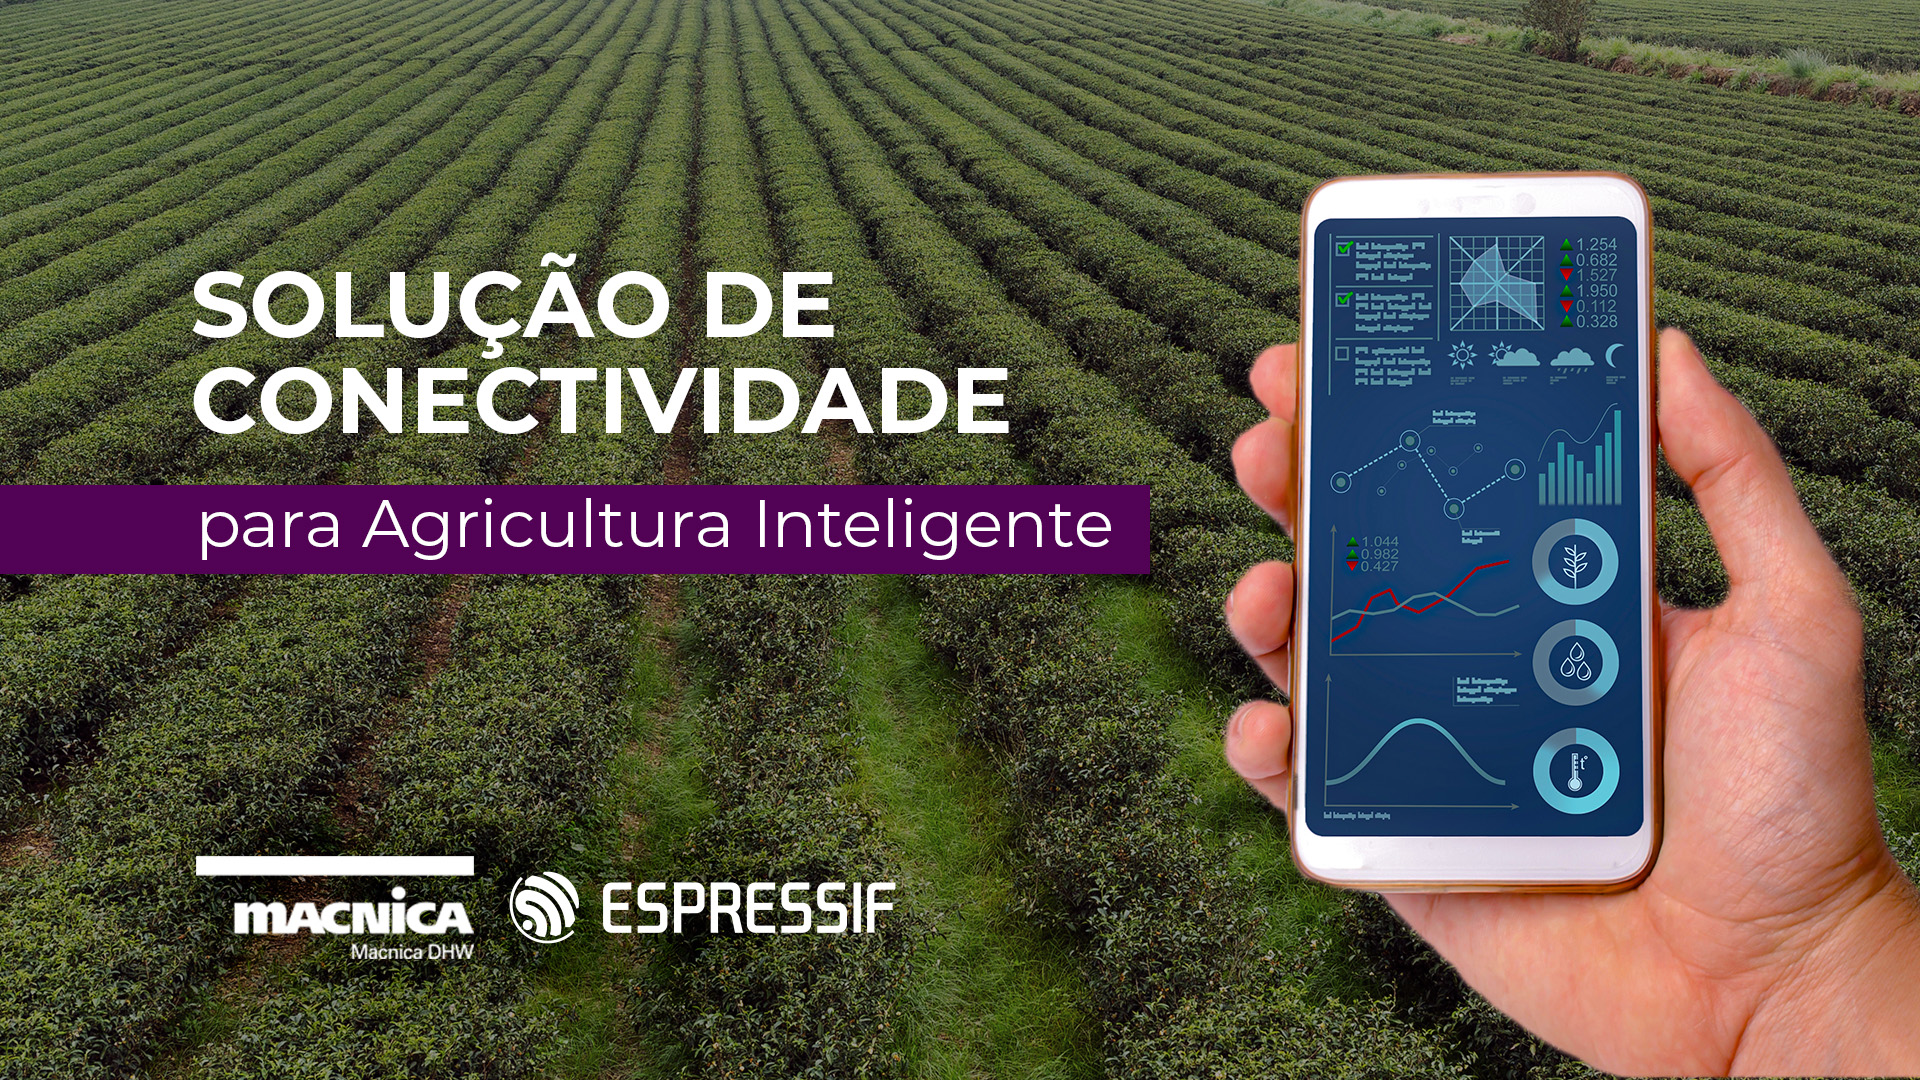 You are currently viewing Dica MDHW: Solução de conectividade para Agricultura Inteligente